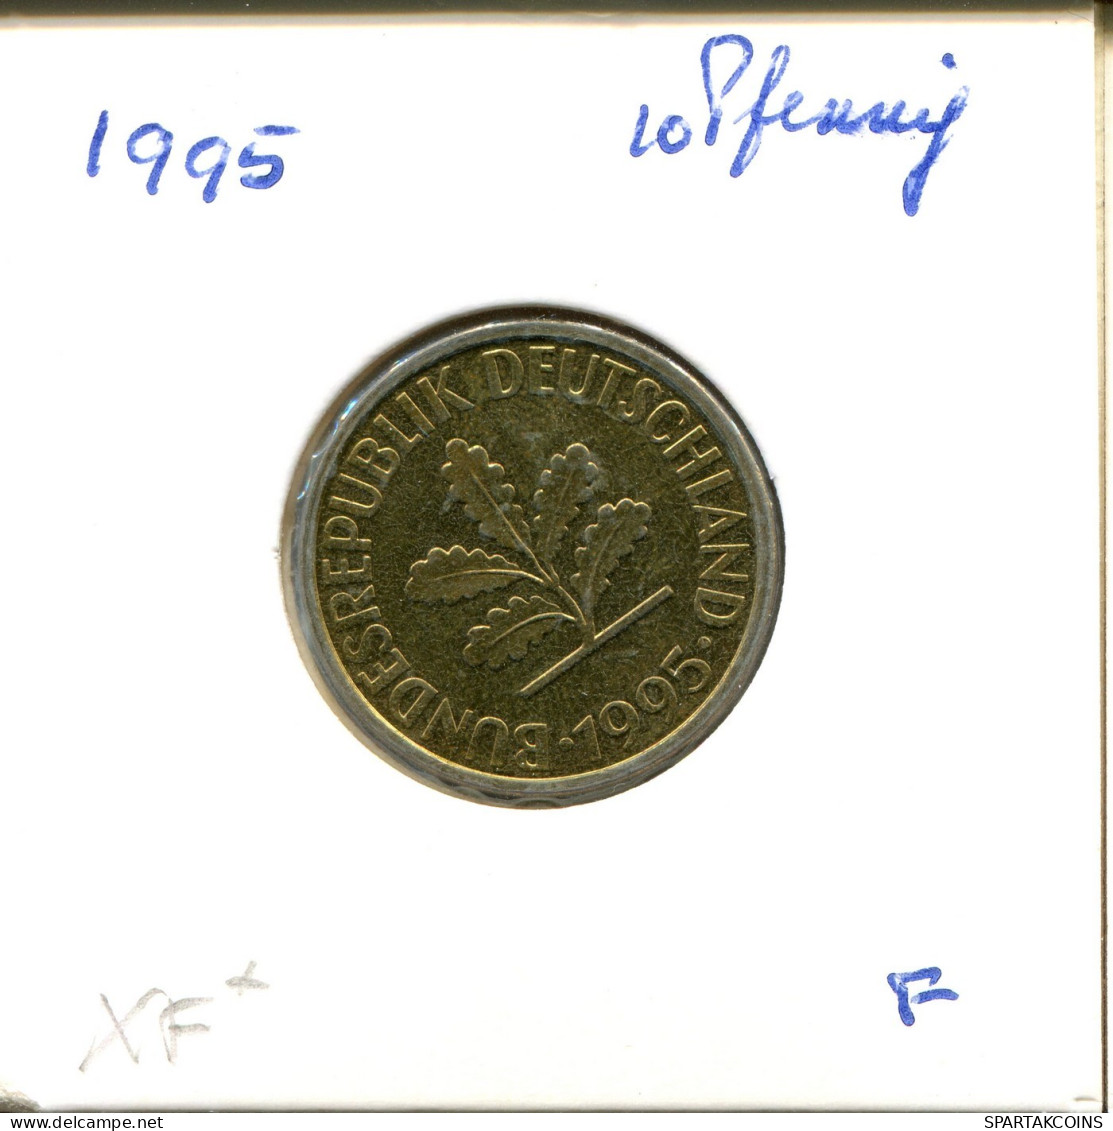 10 PFENNIG 1995 F WEST & UNIFIED GERMANY Coin #DA969.U.A - 10 Pfennig